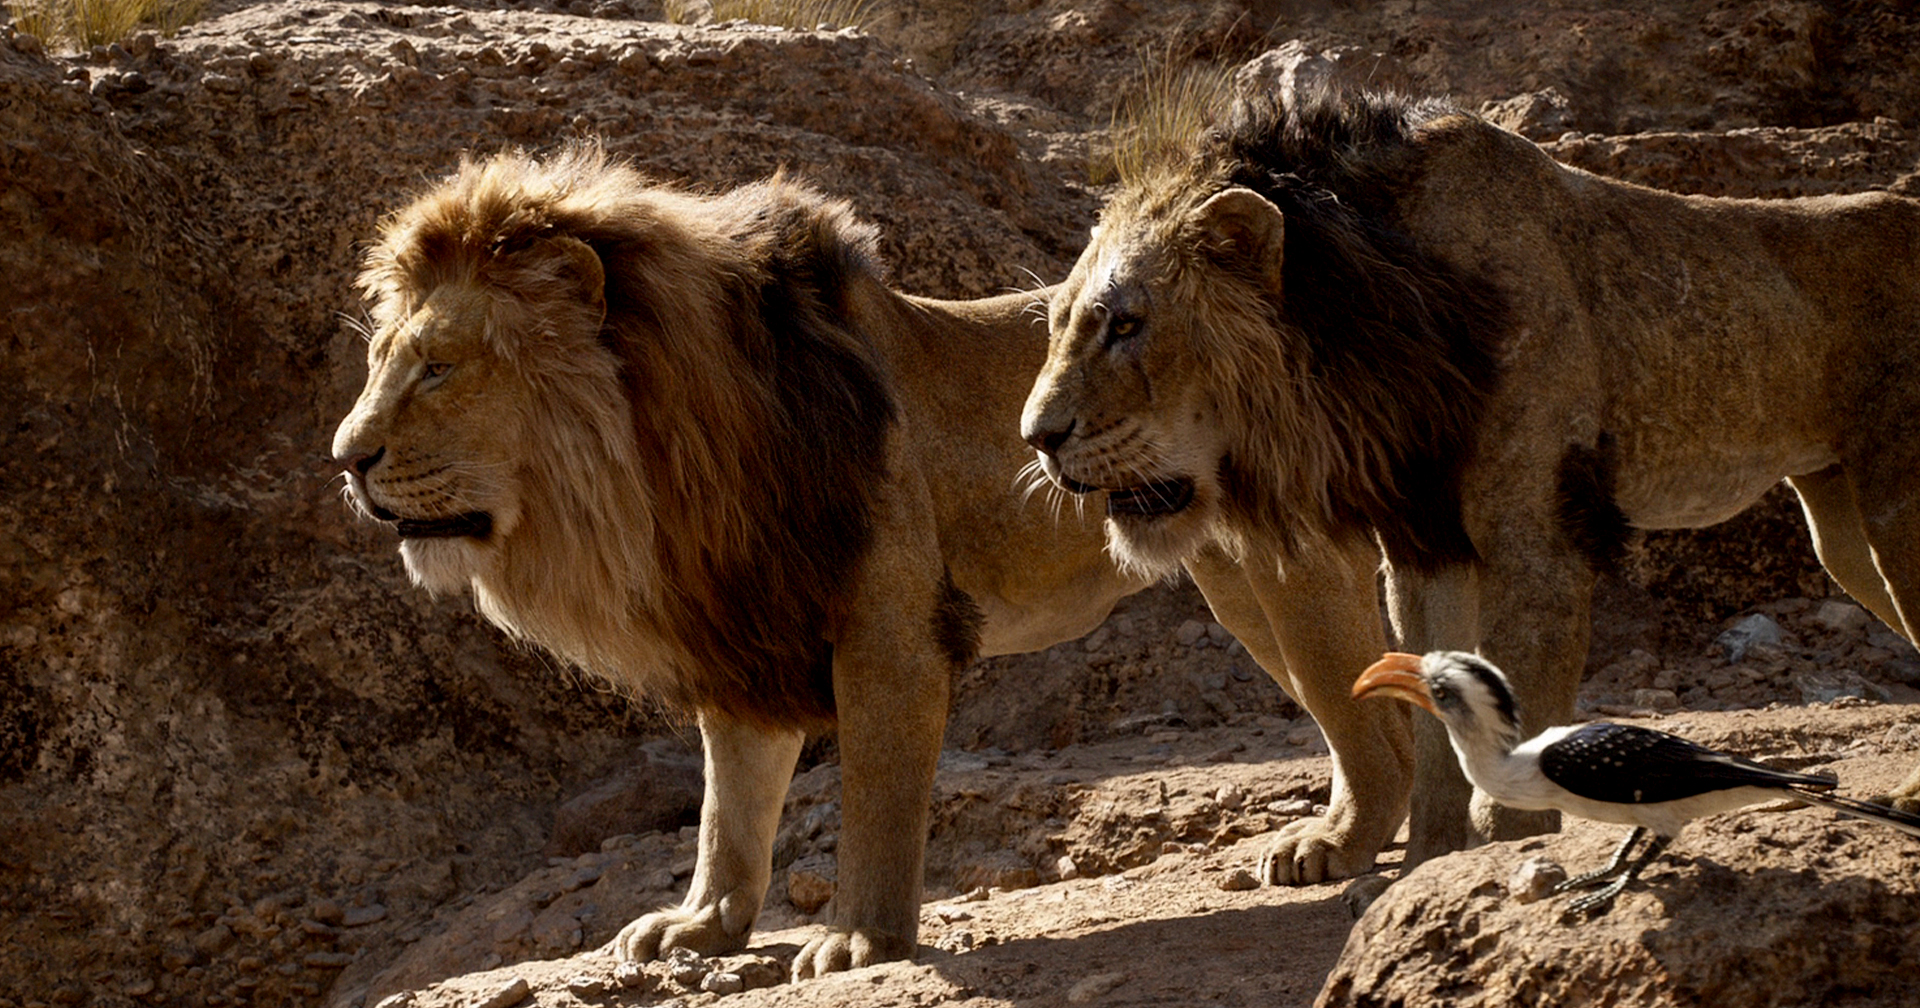 ดิสนีย์สร้างภาคก่อนหน้า The Lion King เล่าเรื่องราวของ มุฟาซา และ สการ์ ในวัยหนุ่ม